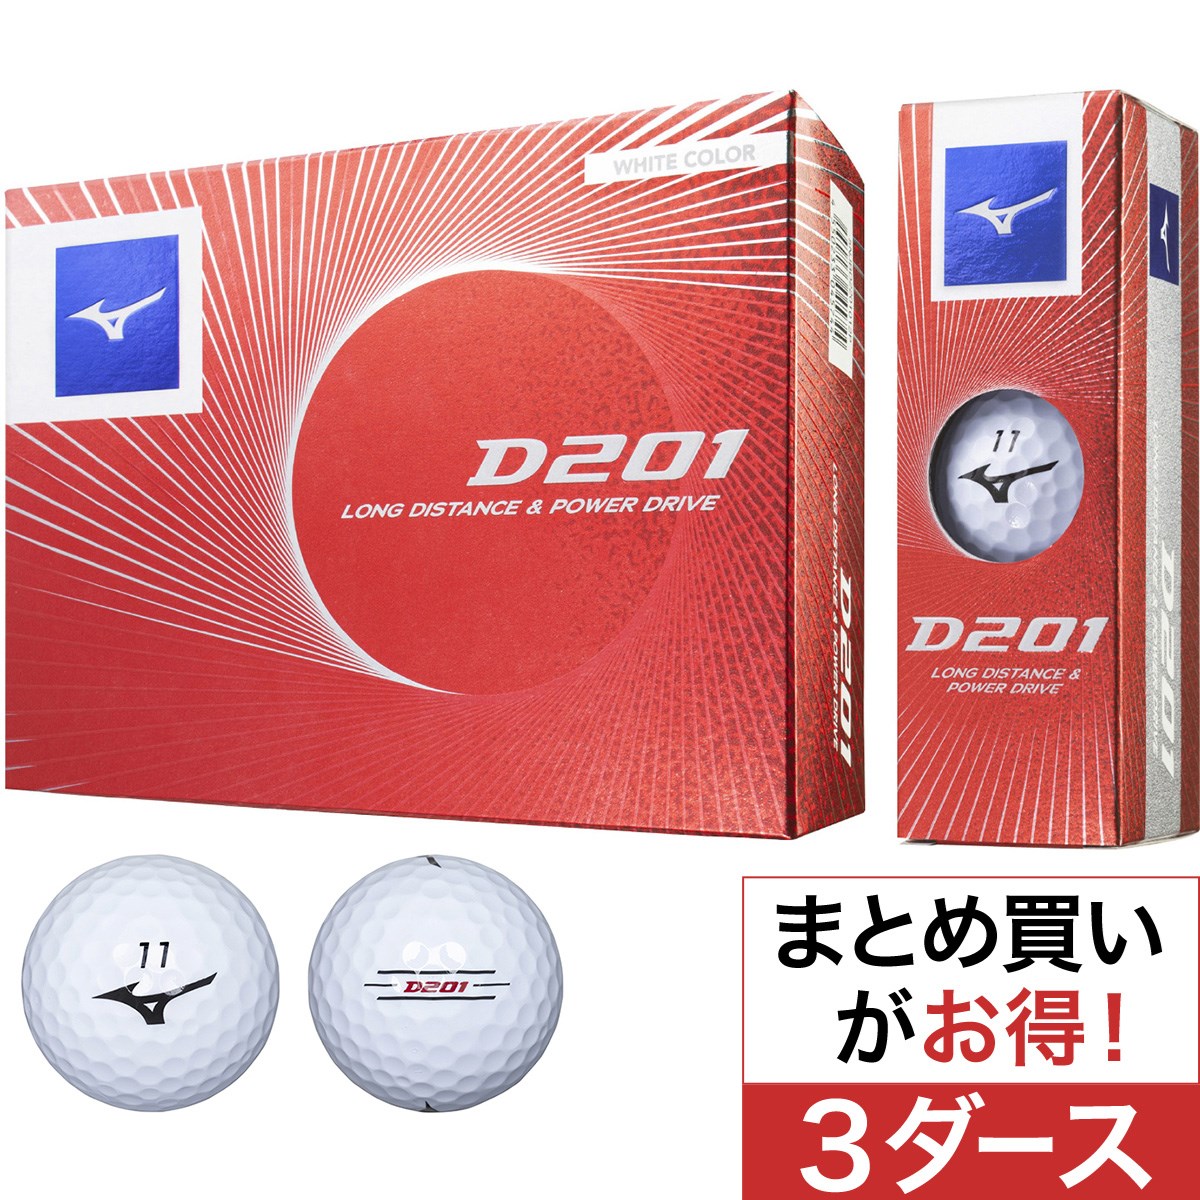 ミズノ(MIZUNO) D201 ゴルフボール 3ダースセット 